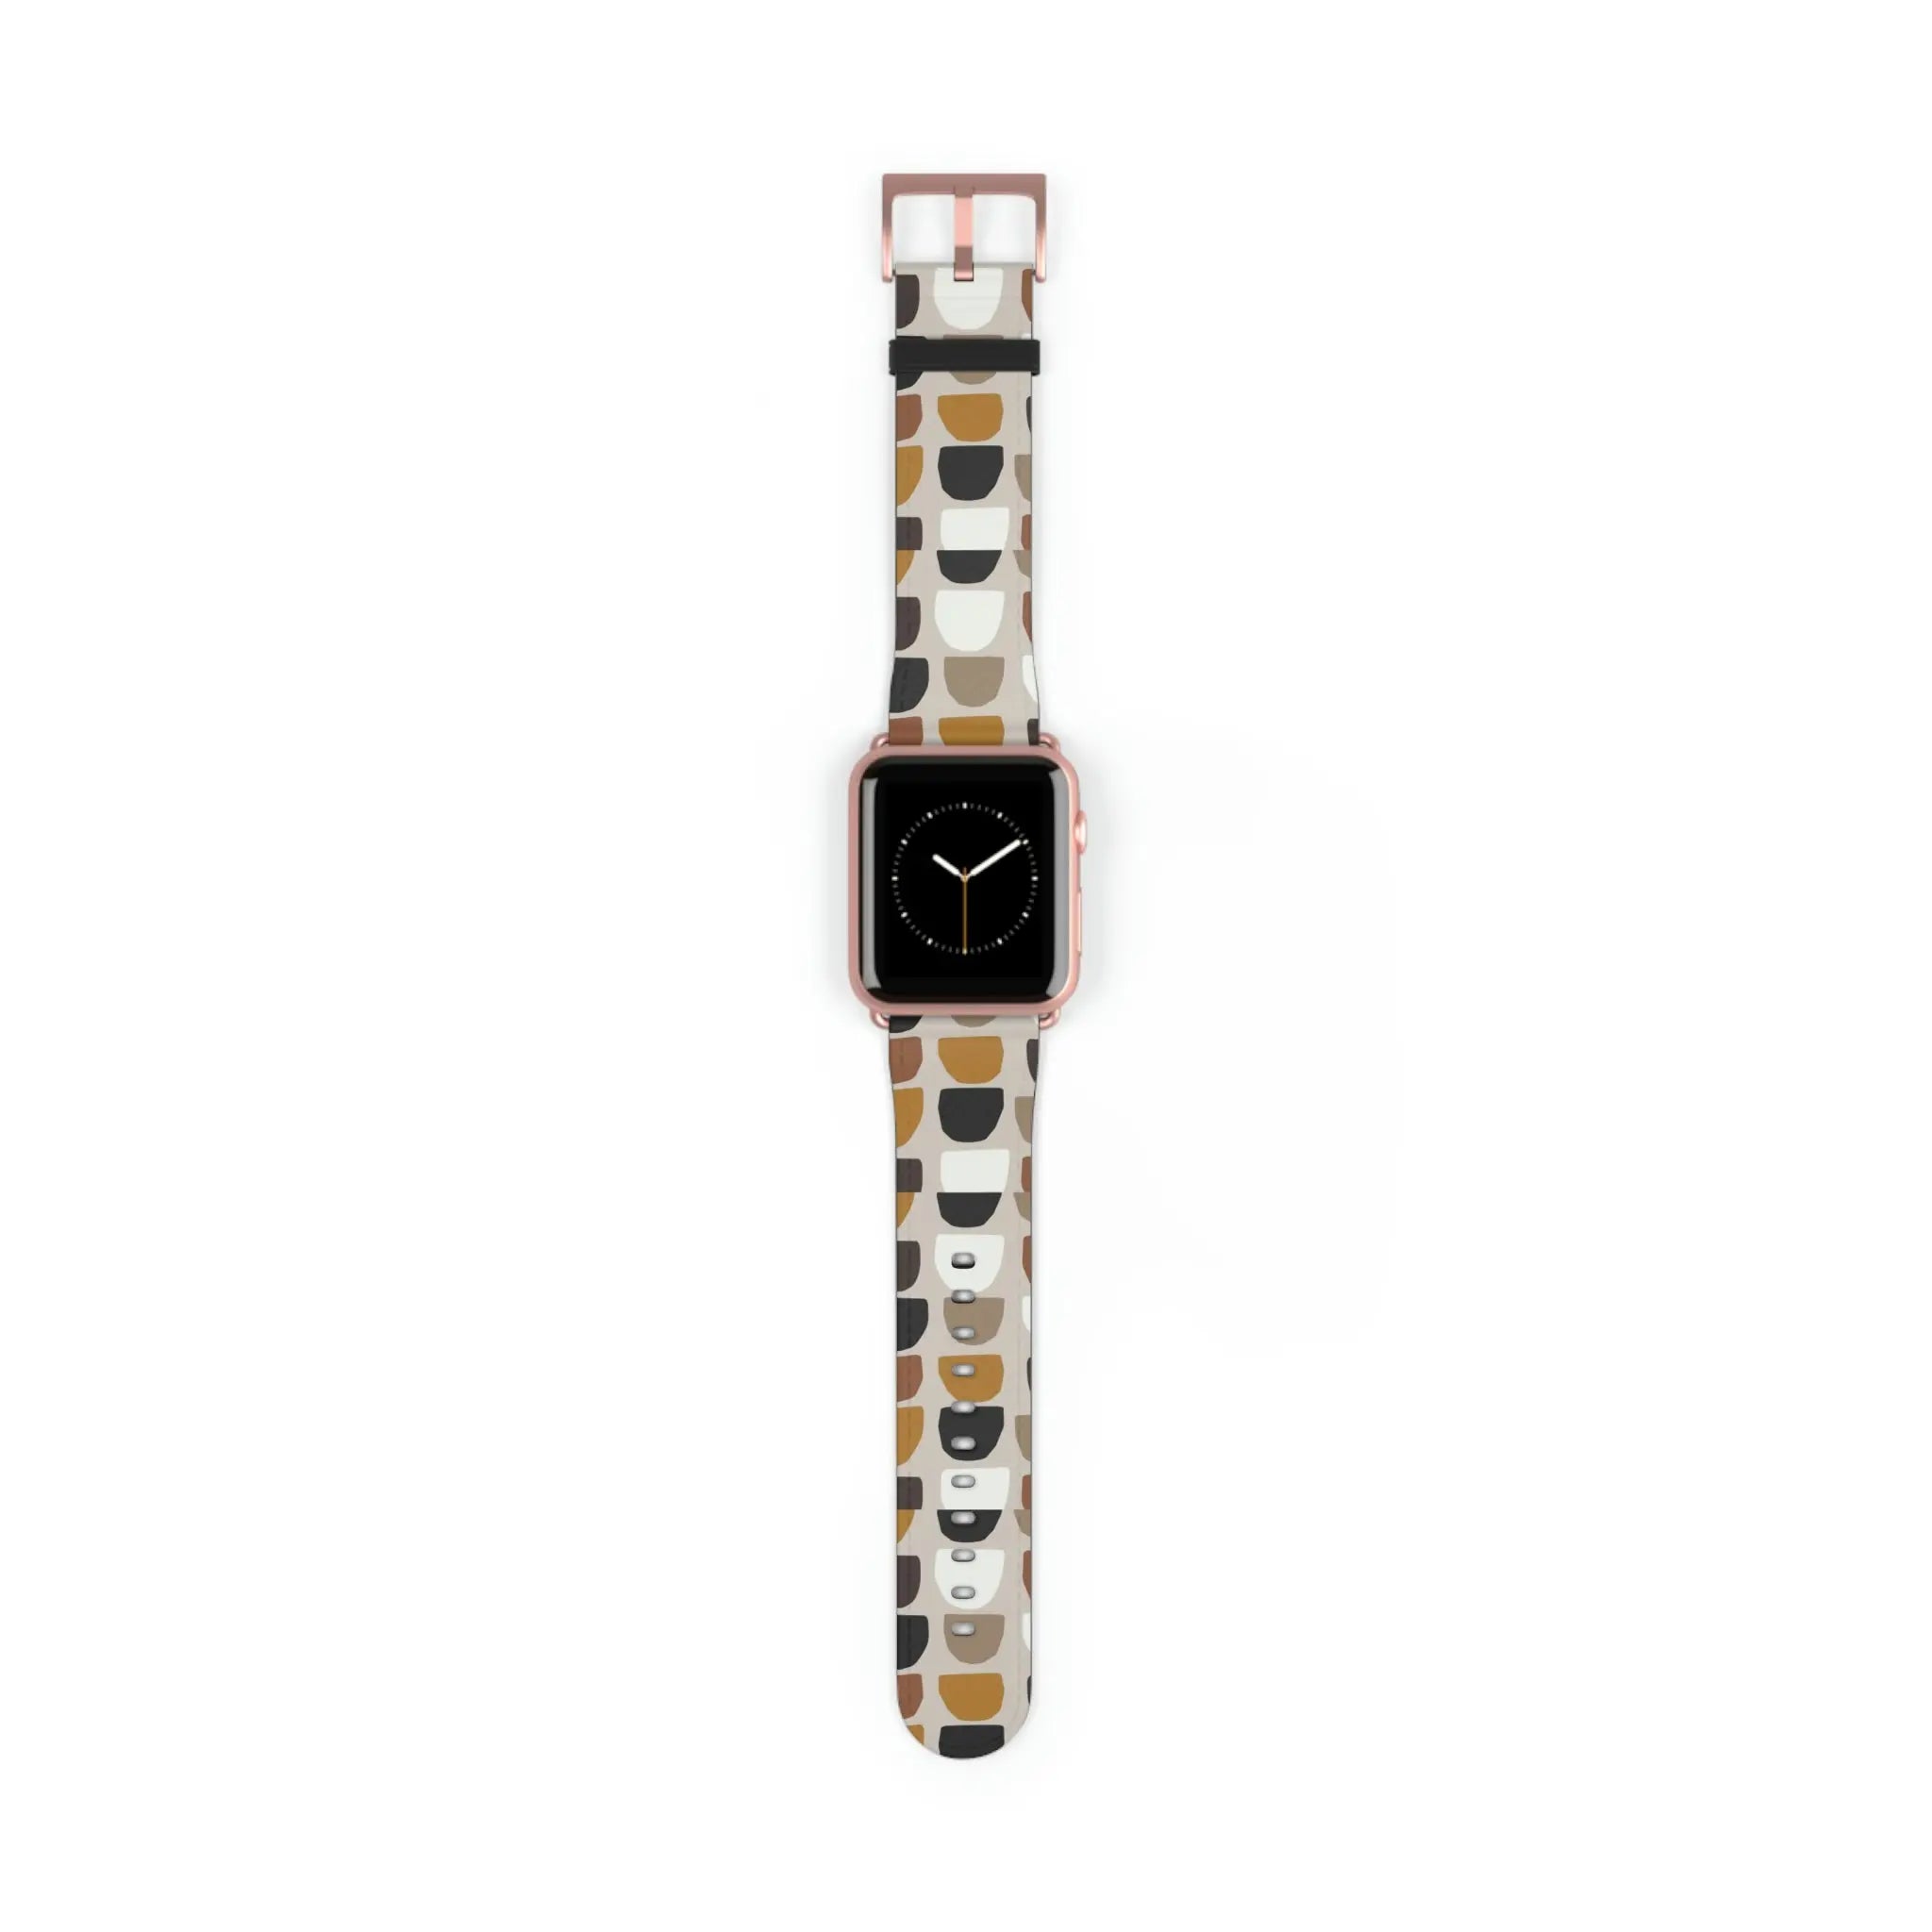  Boho (Khaki) Apple Watch Band Watch Band42-45mmRoseGoldMatte